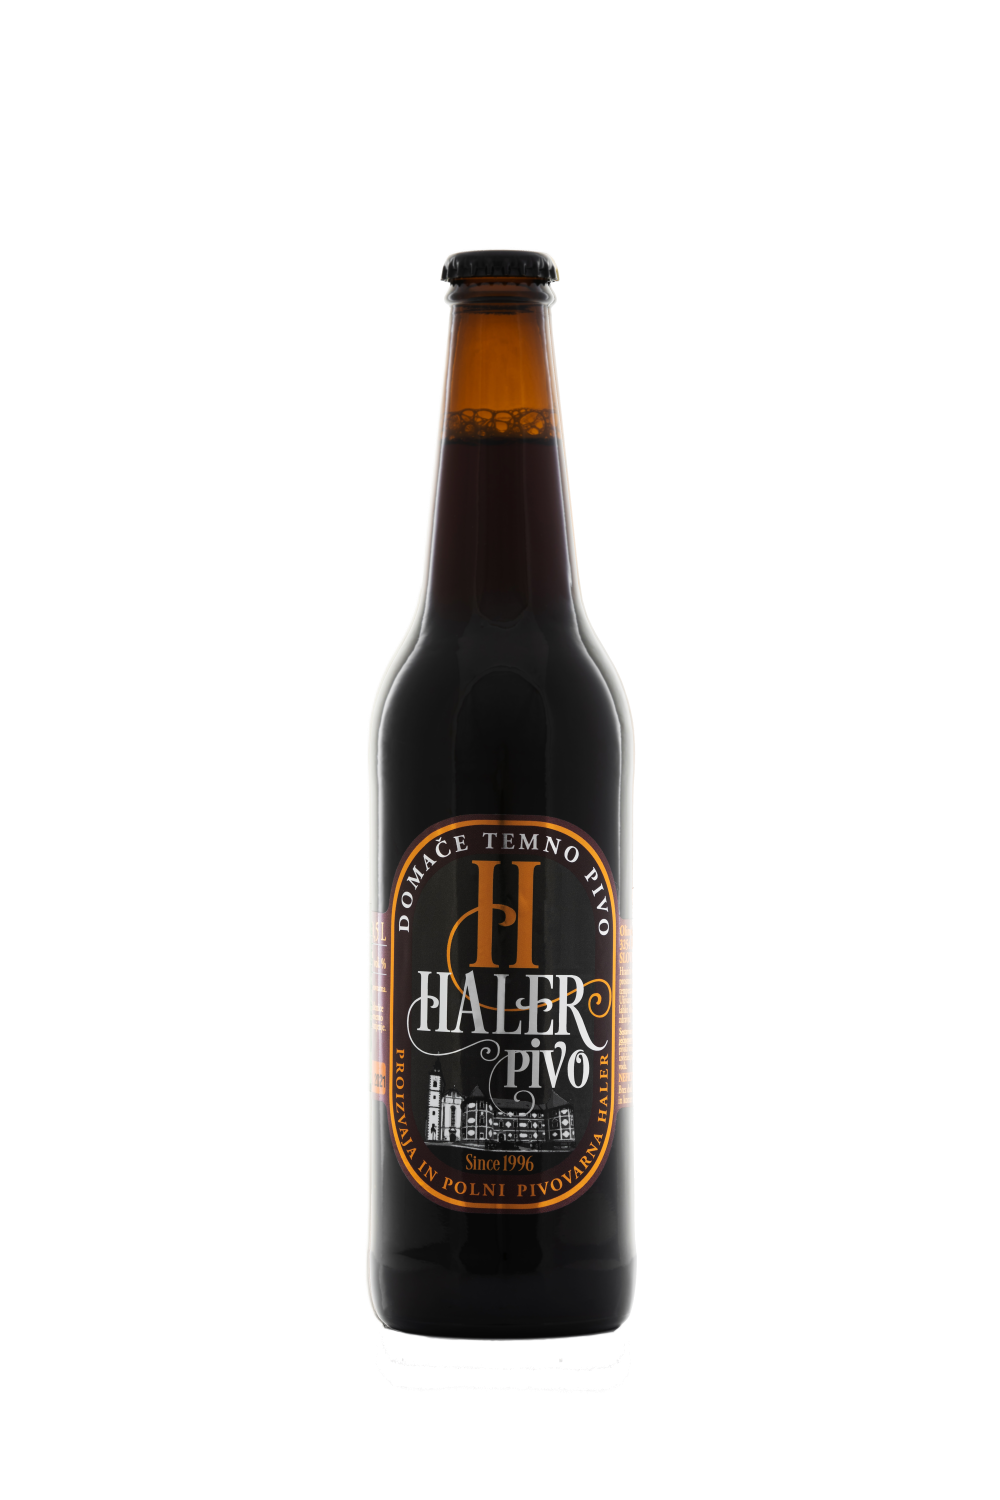 Temno pivo Haler